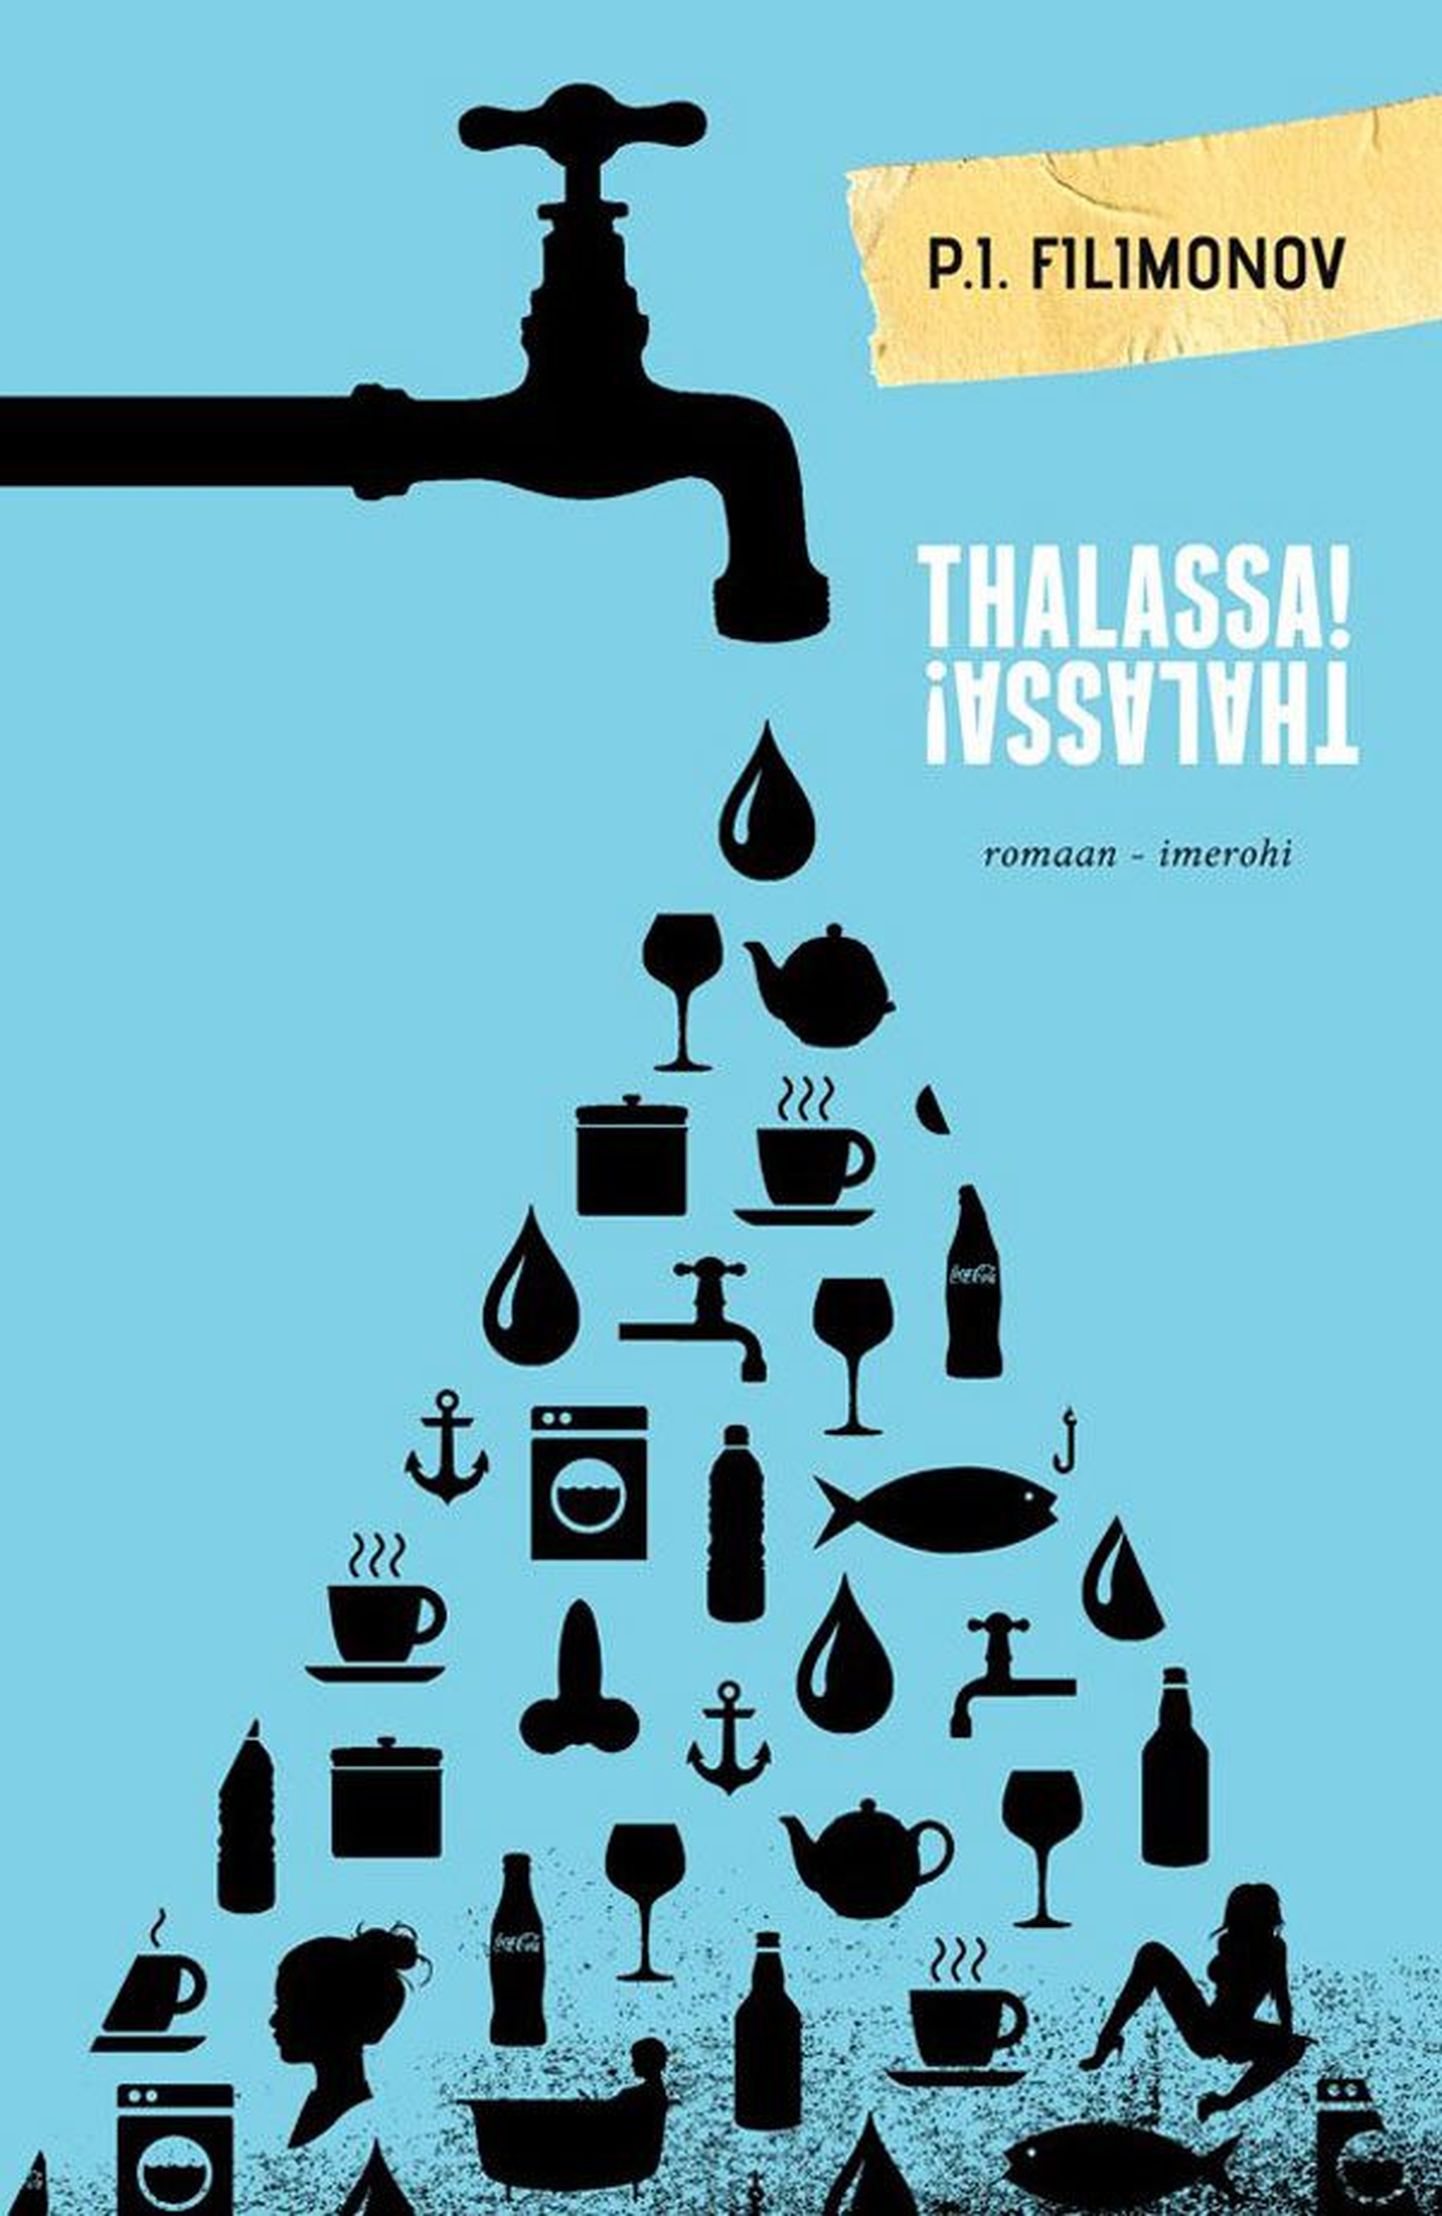 Raamat
P. I. Filimonov 
«Thalassa! Thalassa!» 
Vene keelest 
tõlkinud Ingrid Velbaum-Staub
Varrak, 2013
496 lk